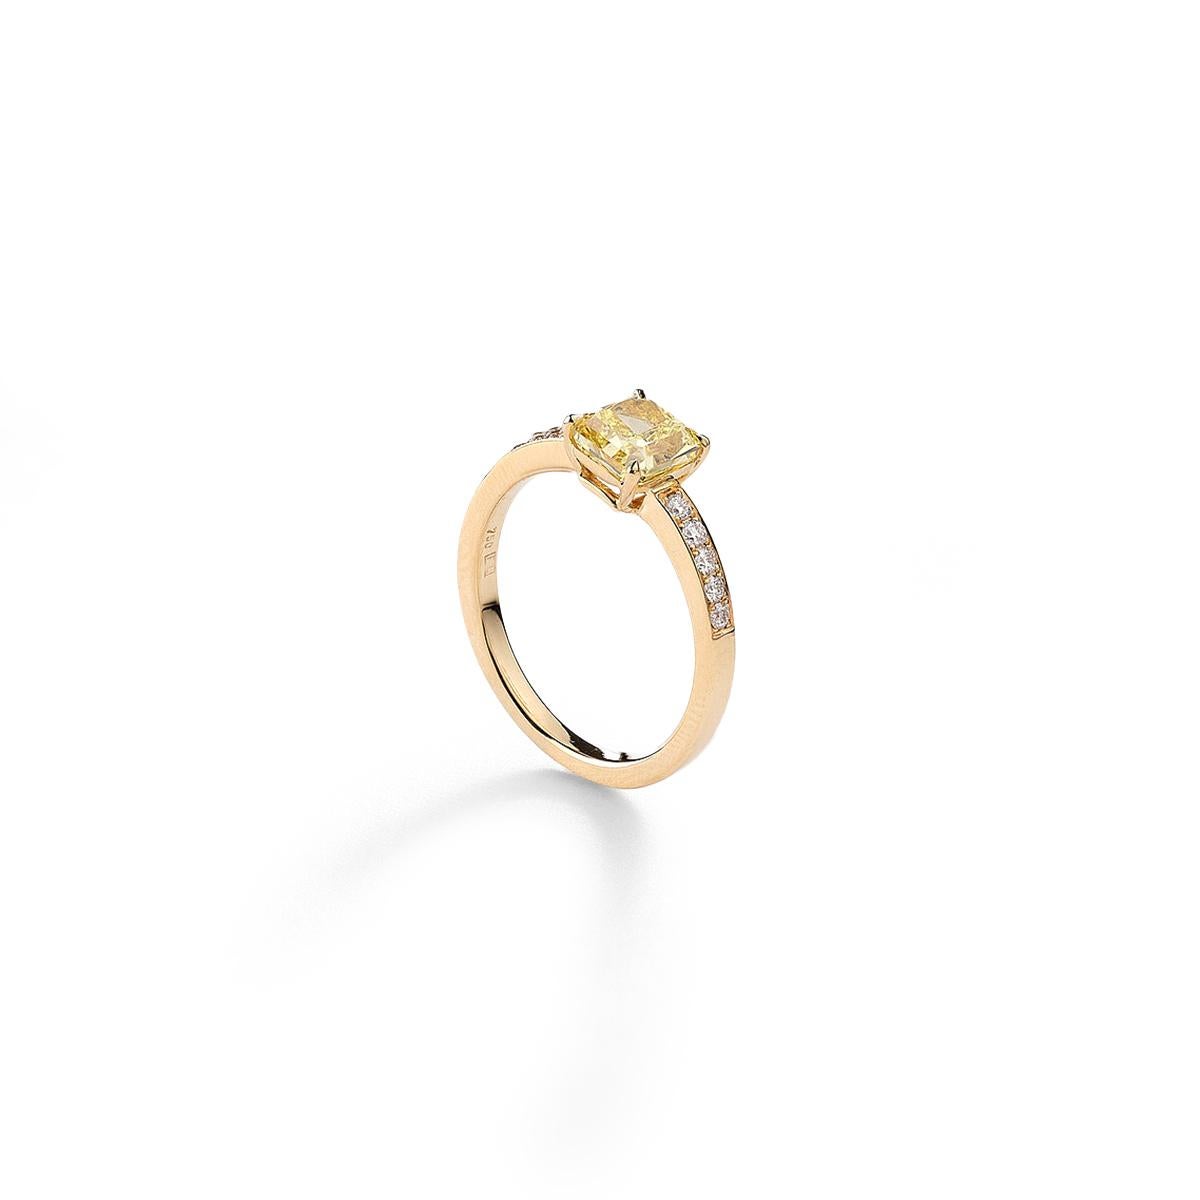 Bague en or jaune 18kt sertie d'un diamant de taille carrée Fancy Yellow IF de 1,33 cts et de 10 diamants de 0,16 cts Certificat GIA Taille 53  